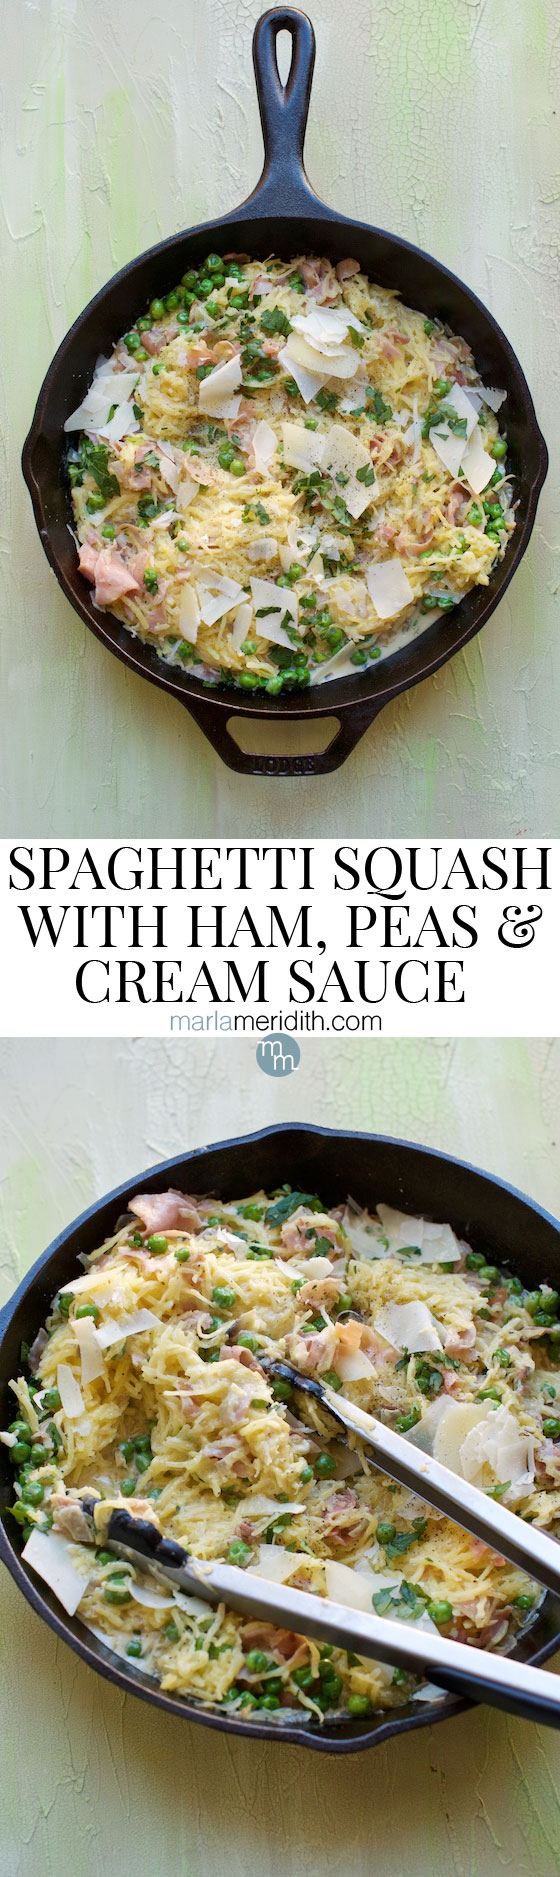 Spaghetti Squash with Ham, Peas & Cream Sauce #recipe A delcious #glutenfree alternative to pasta!